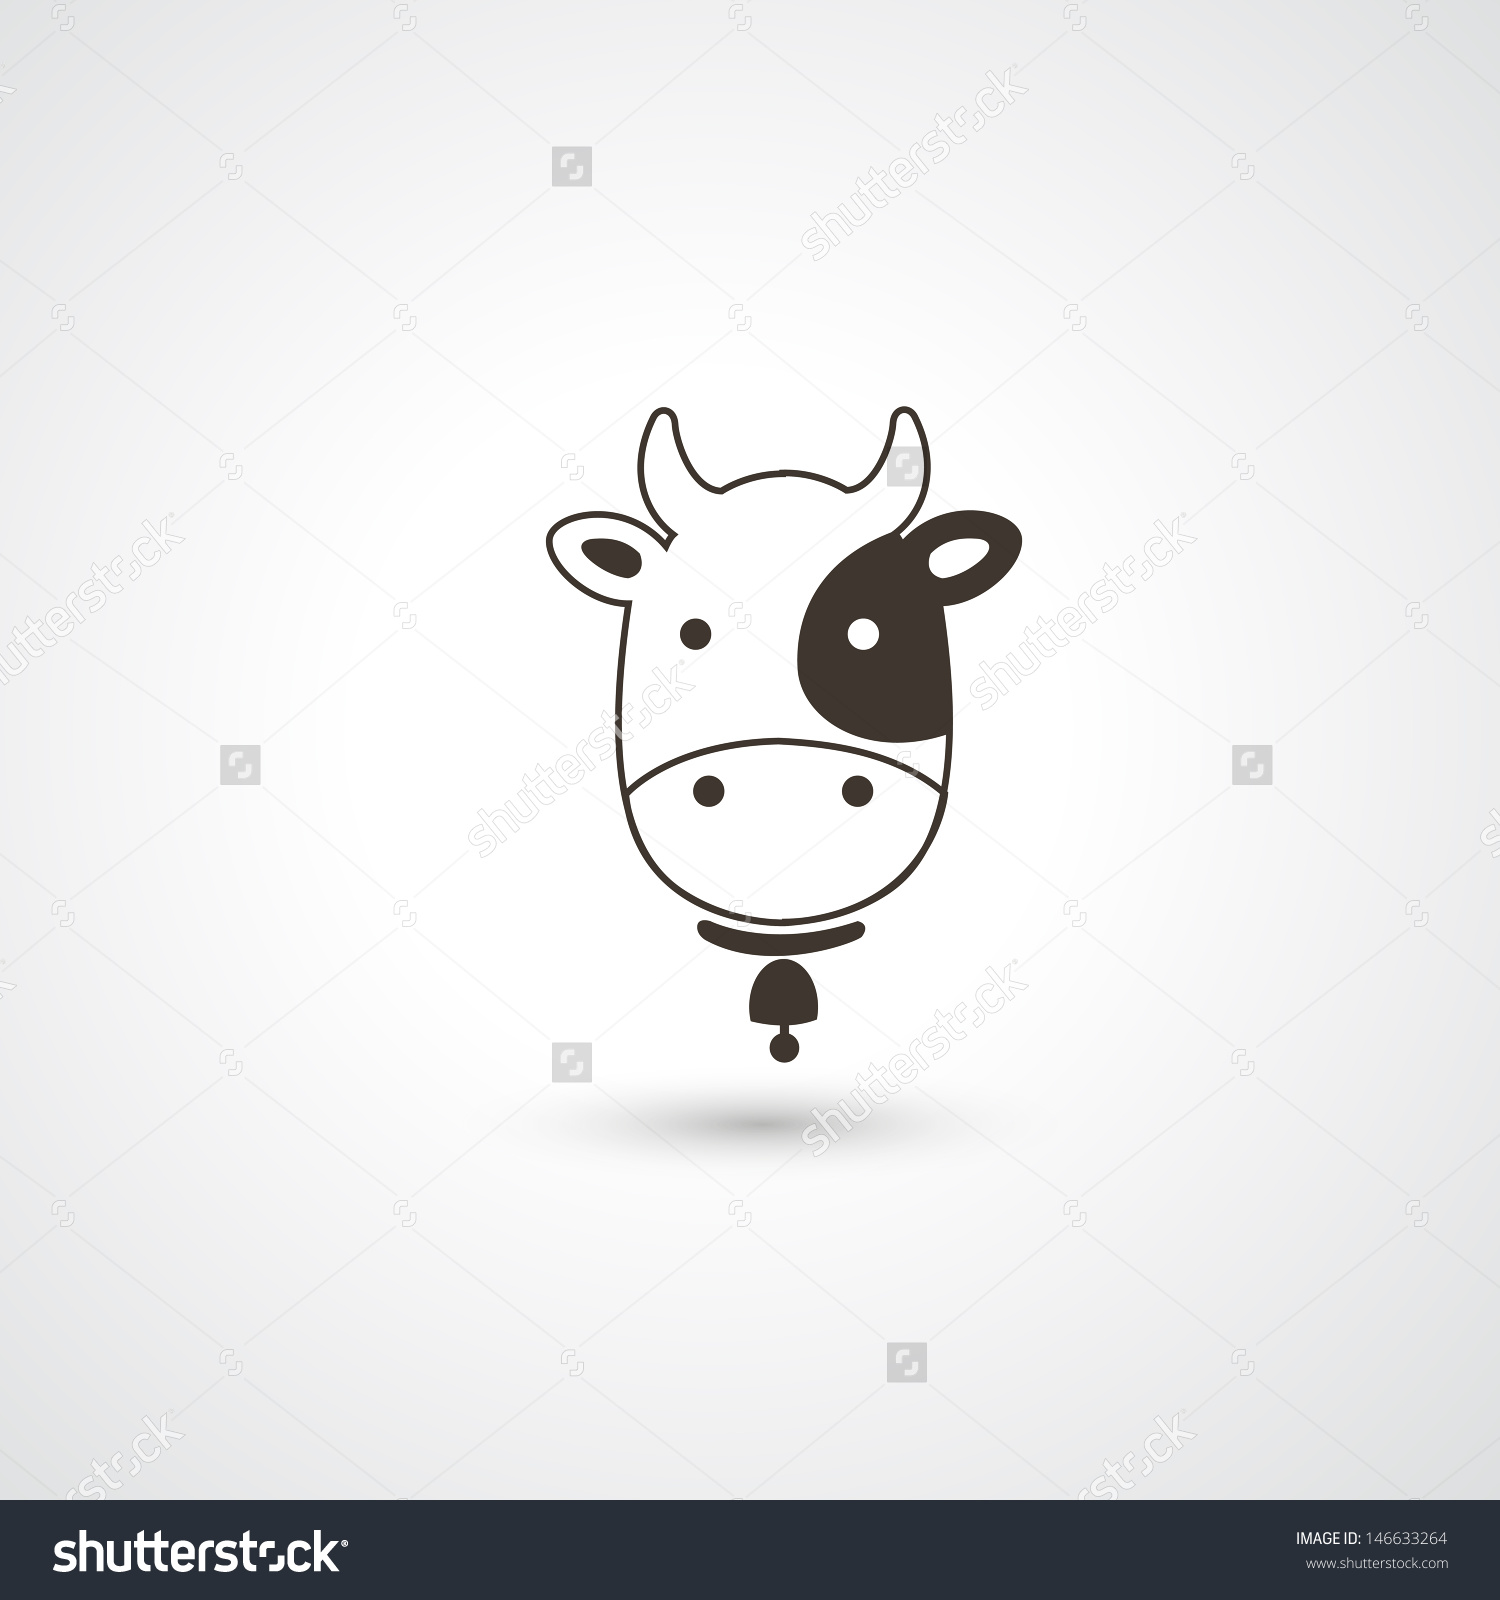 Cow Head Vector